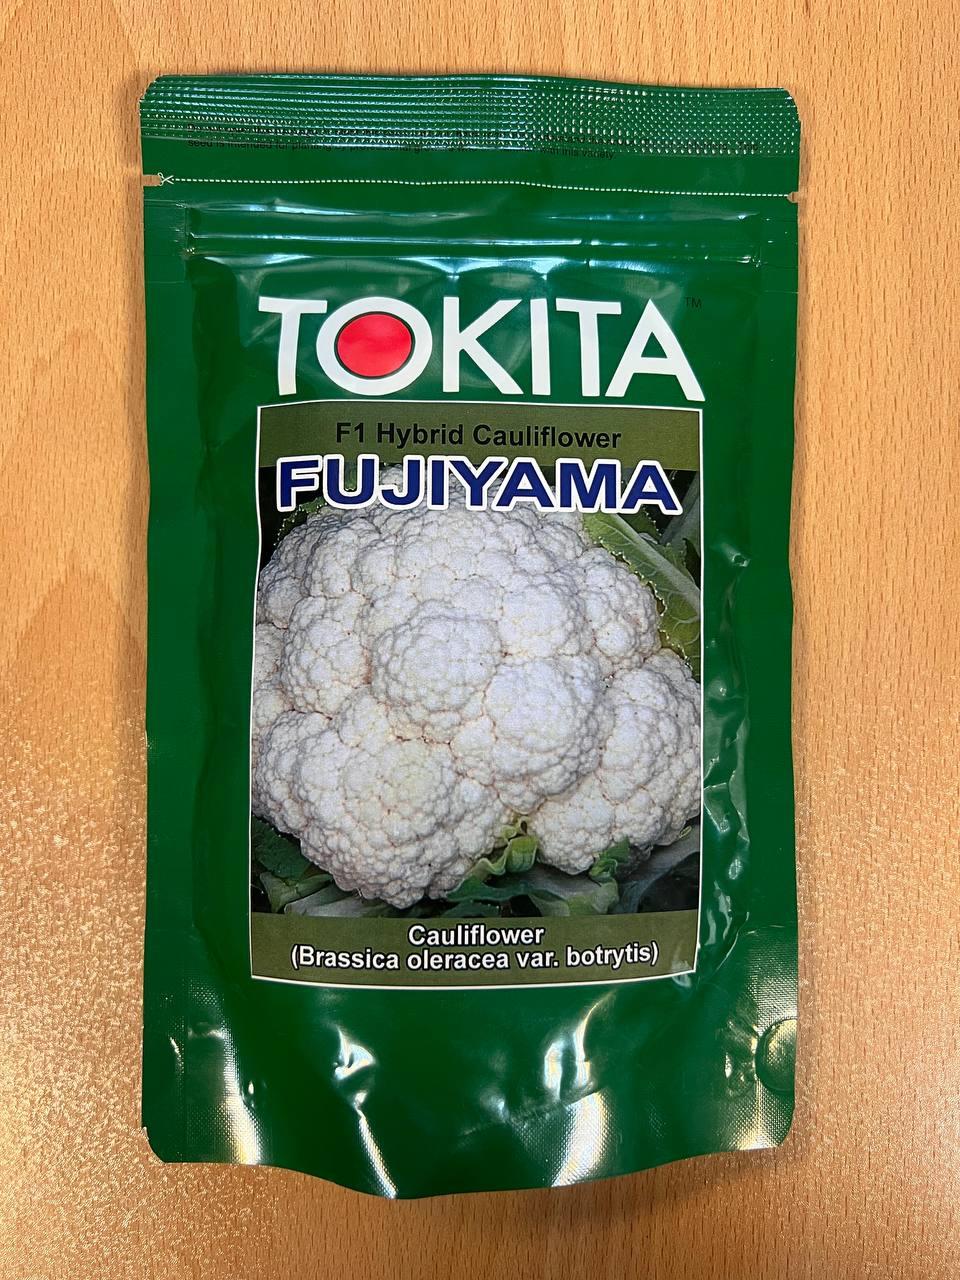 بذر گل کلم فوجی یاما محصول شرکت توکیتا ژاپن بوده و در قوطی های 100 گرمی به بازار عرضه می گردد. بذر گل کلم فوجی یاما یکی از ارقام هیبرید گل کلم بوده که industry agriculture agriculture